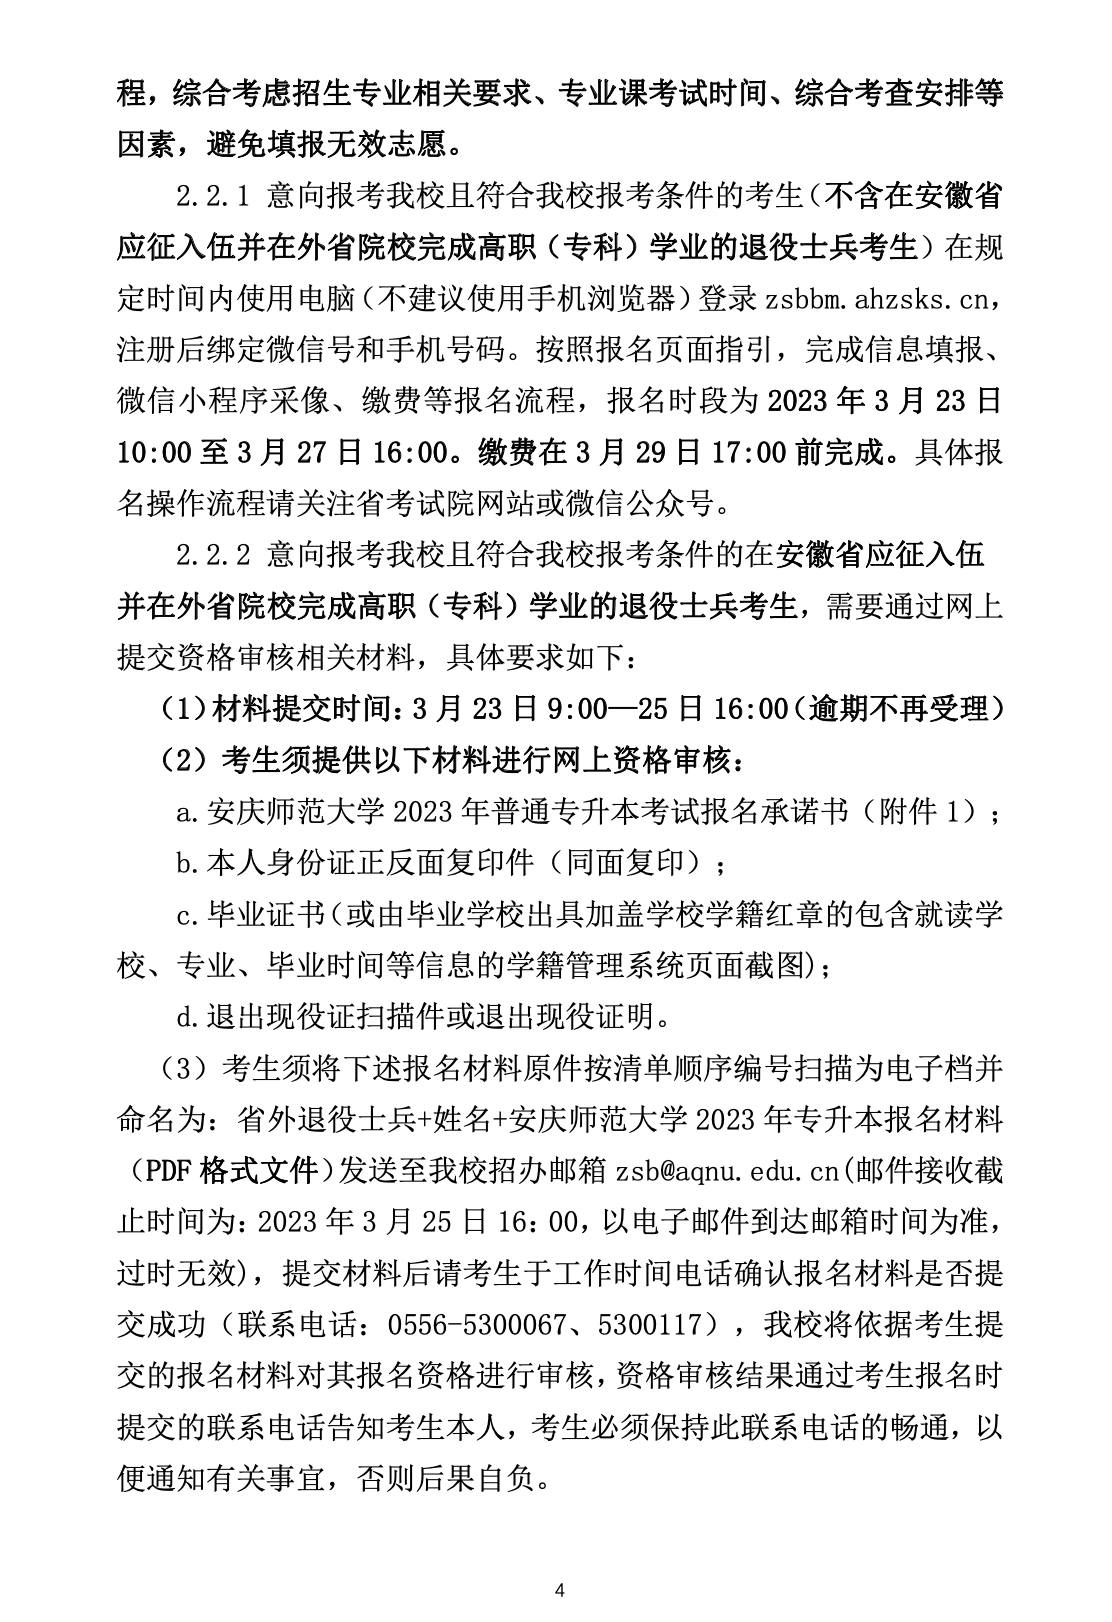 安庆师范大学公布2023年专升本招生章程